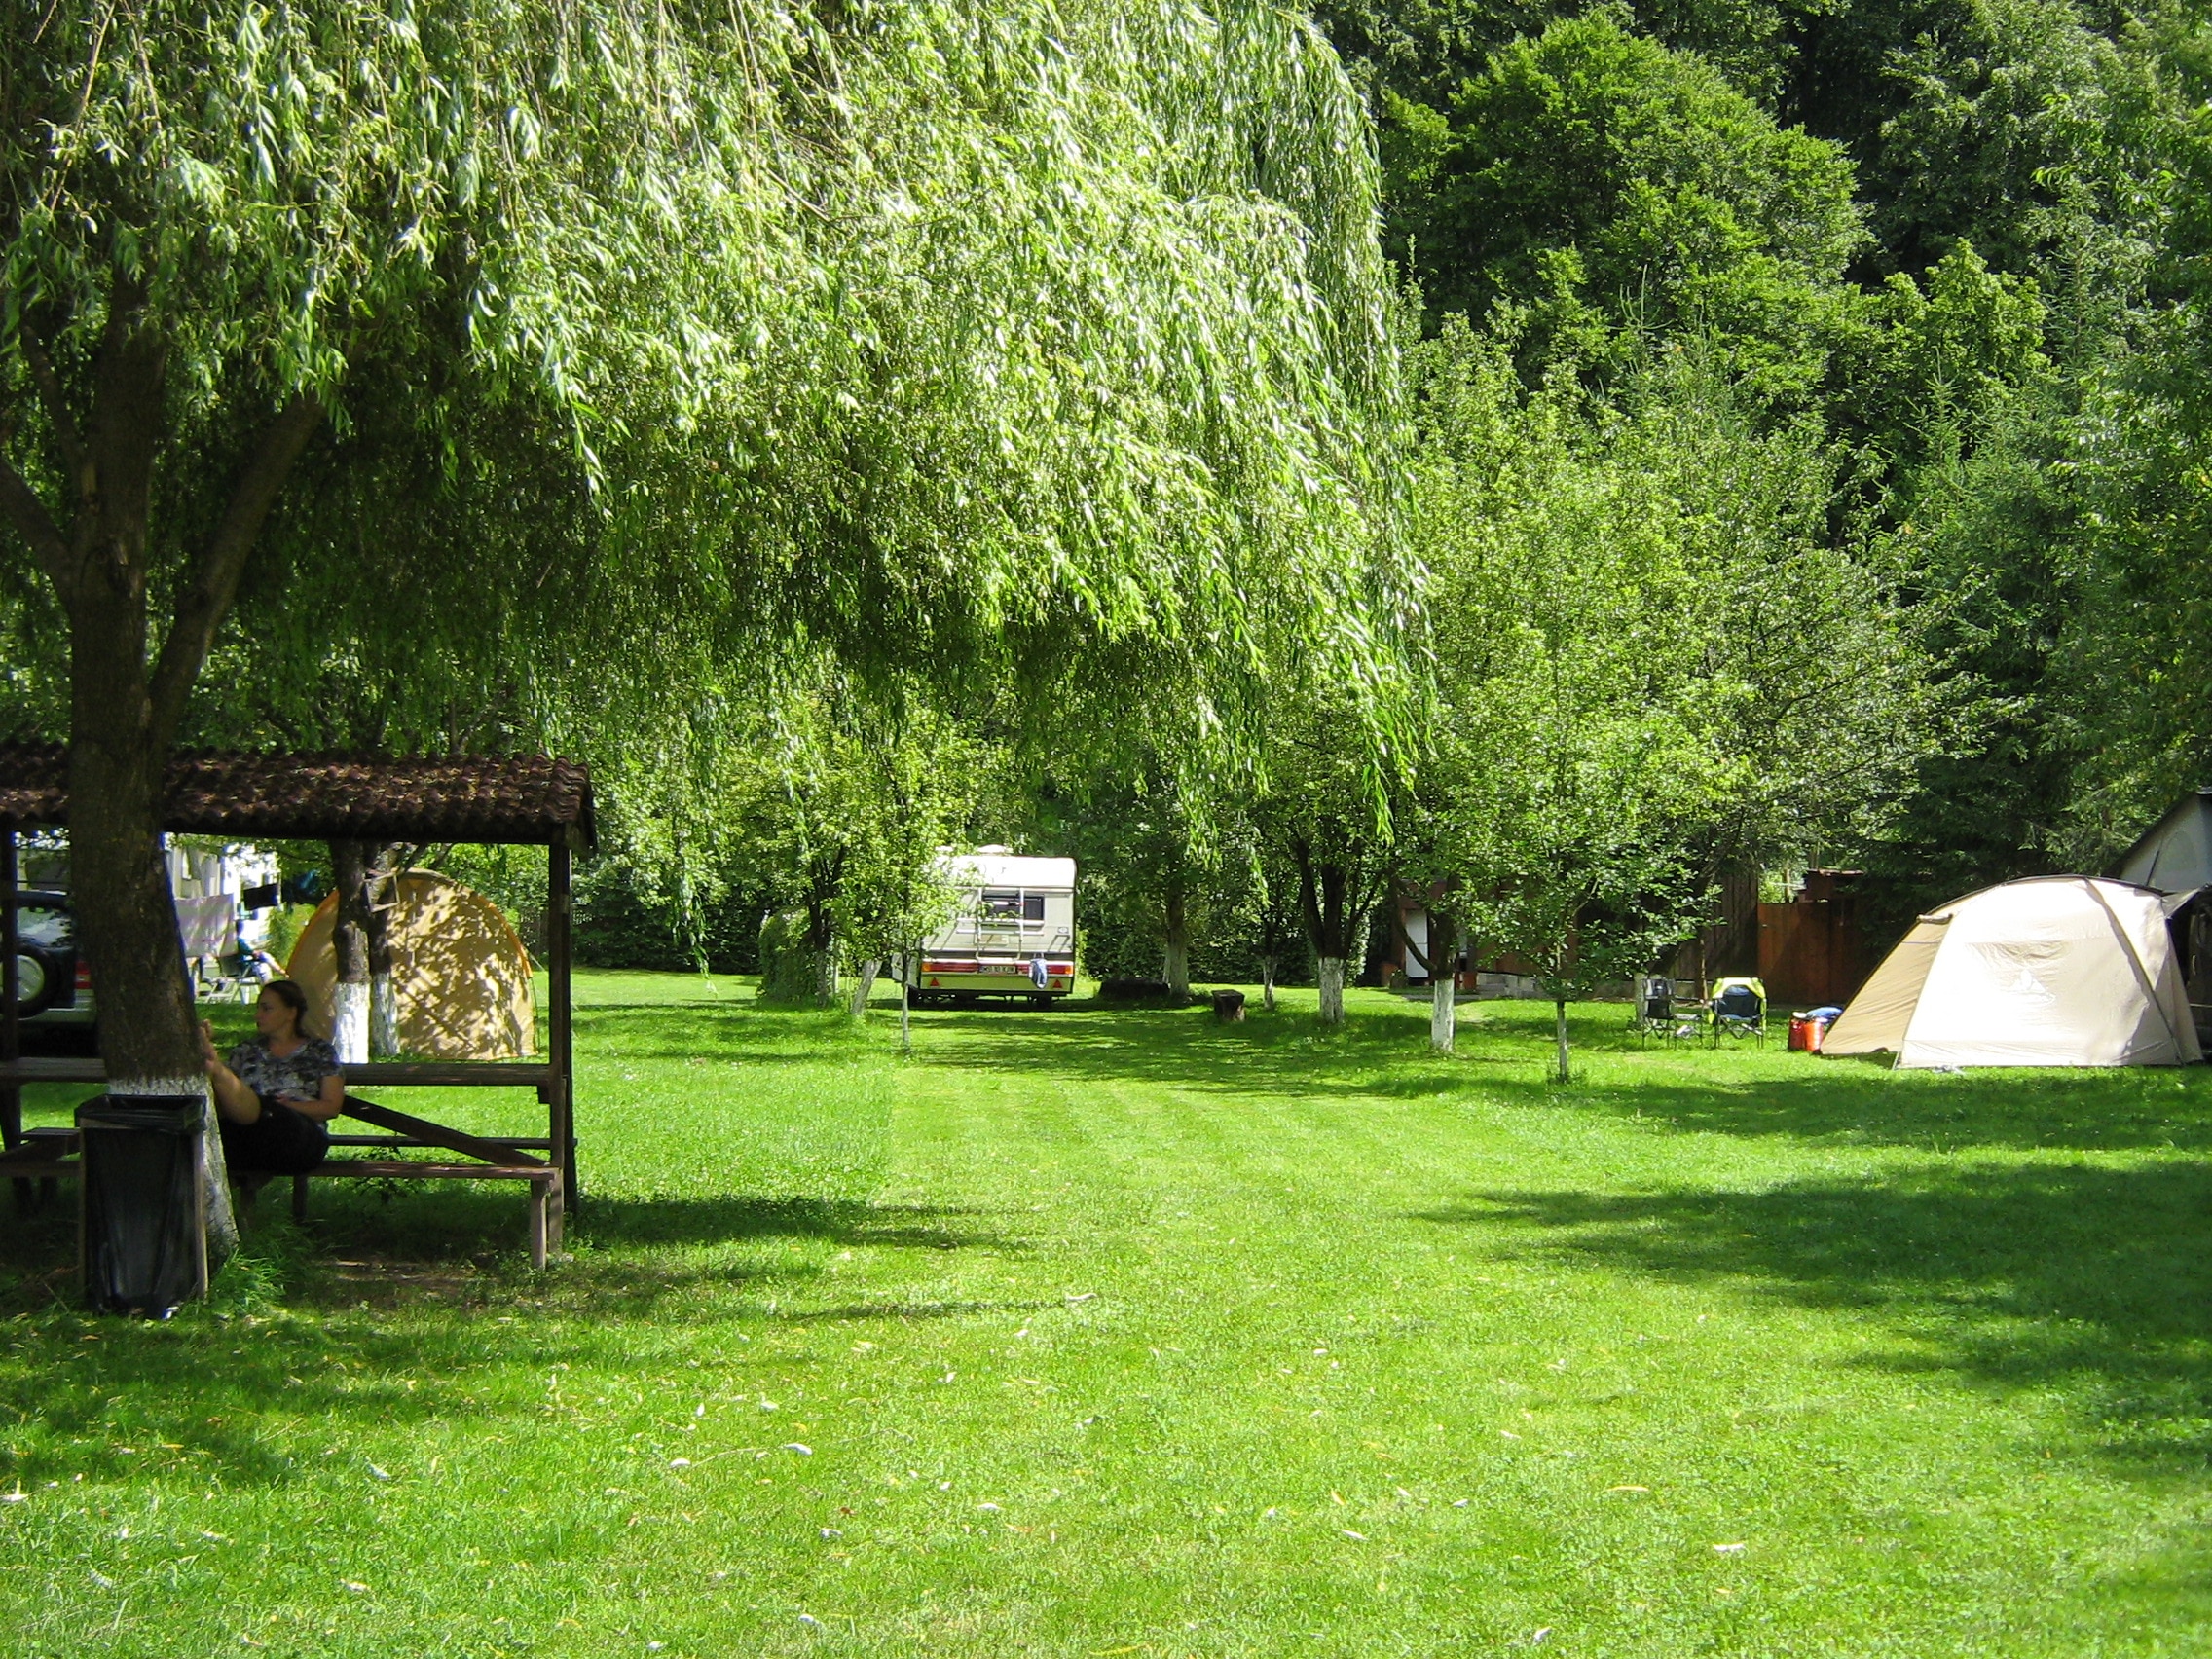 Vasskert Camping